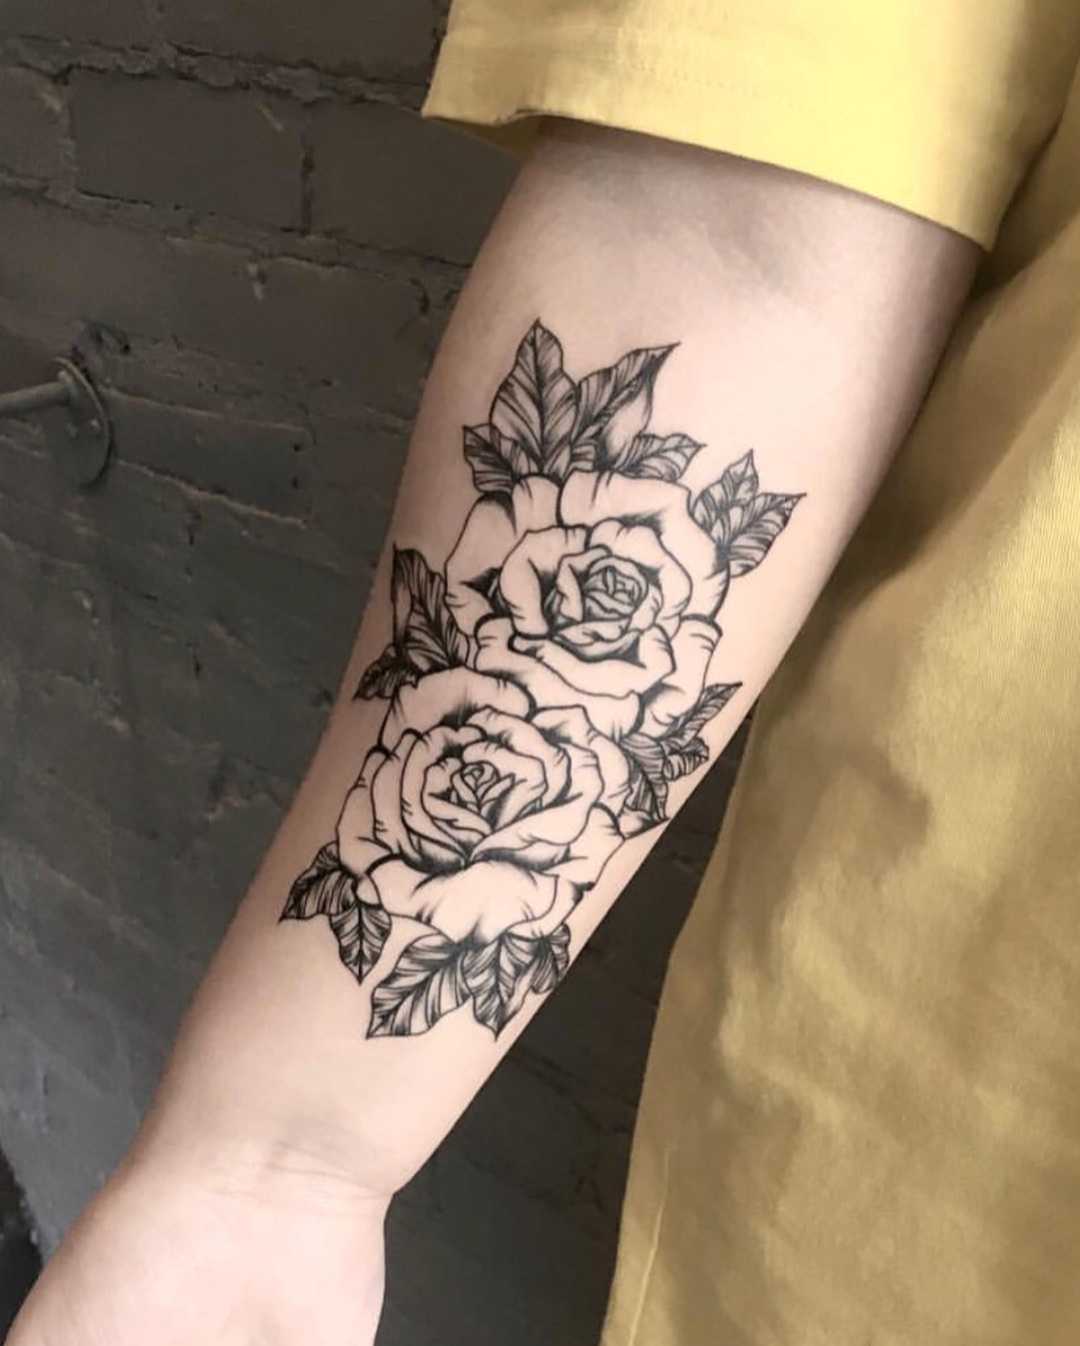 Two black roses tattoo - Tattoogrid.net